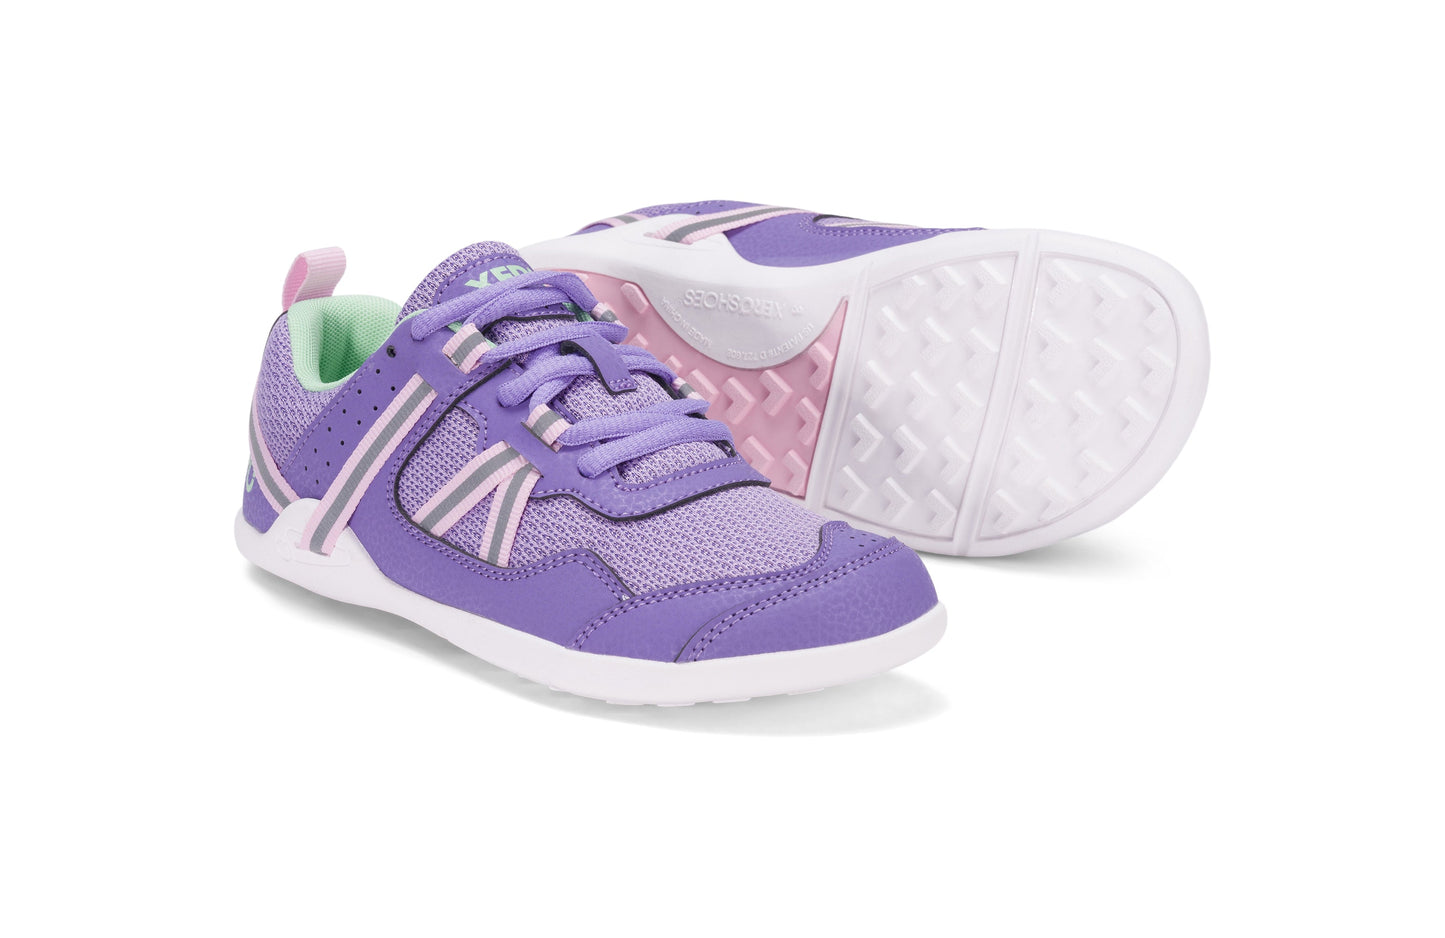 Xero Shoes Prio Kids barfods træningssko/sneakers til børn i farven lilac / pink, par